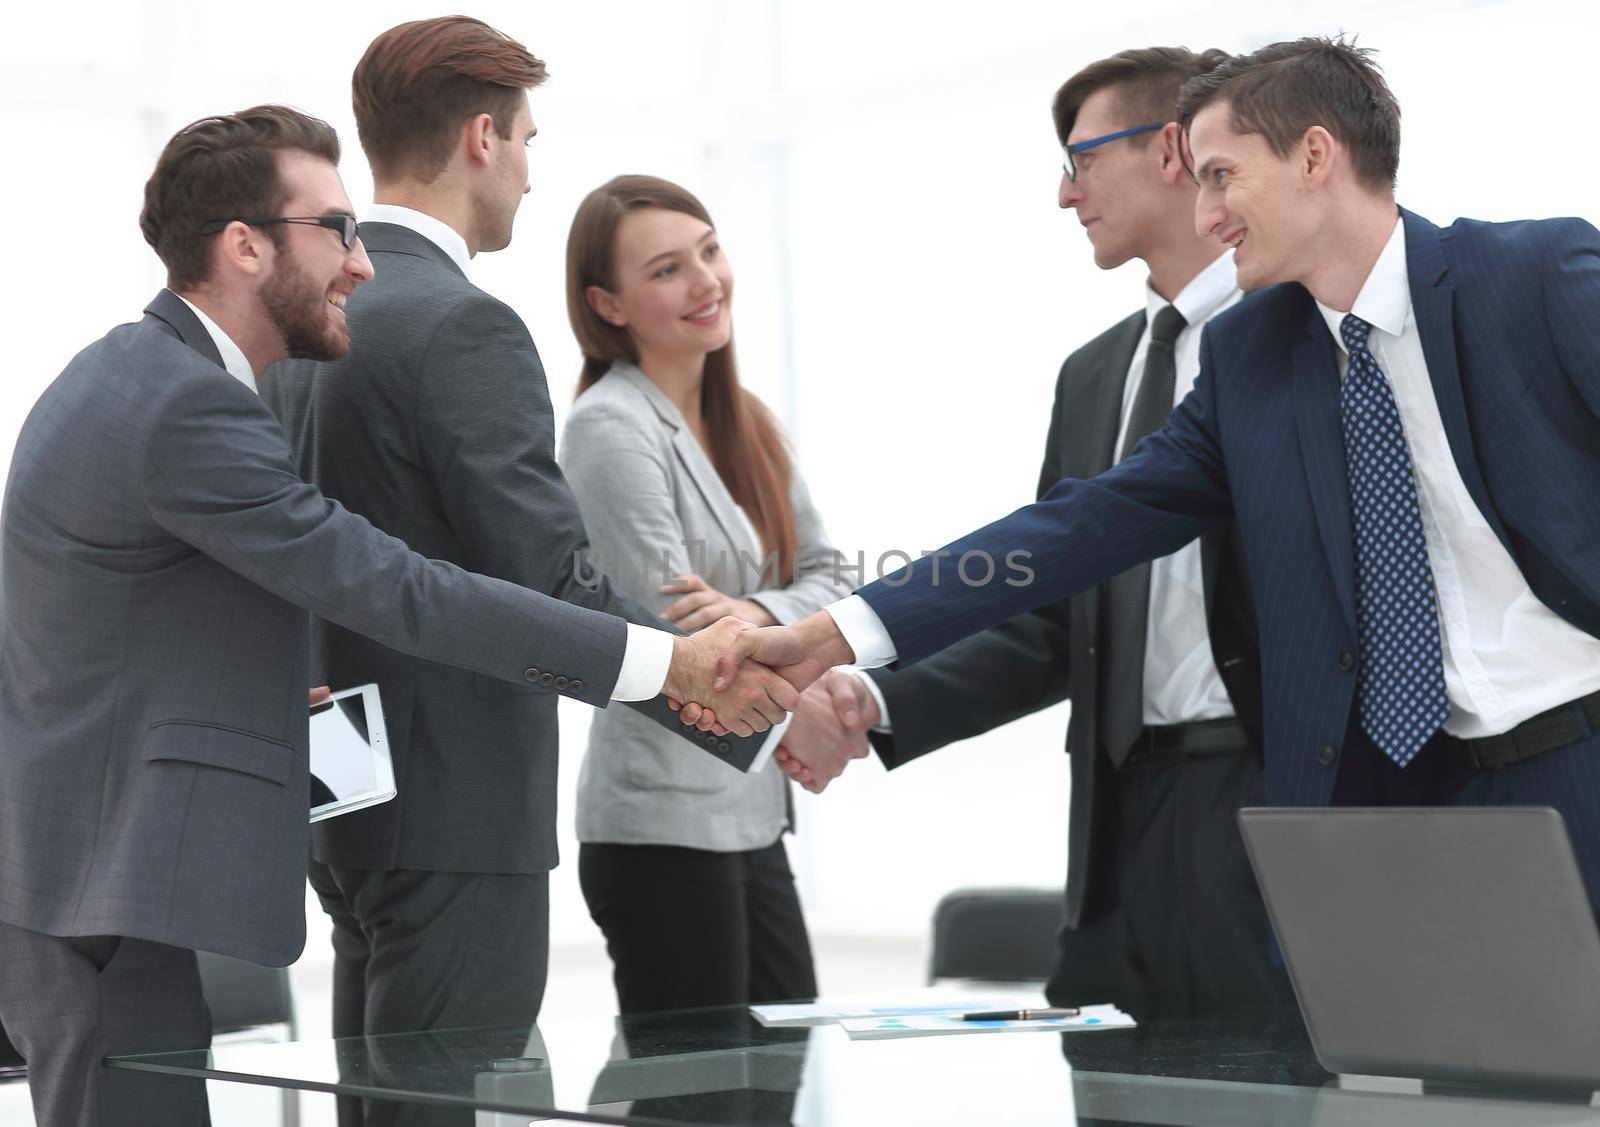 leaders of business teams shake hands.